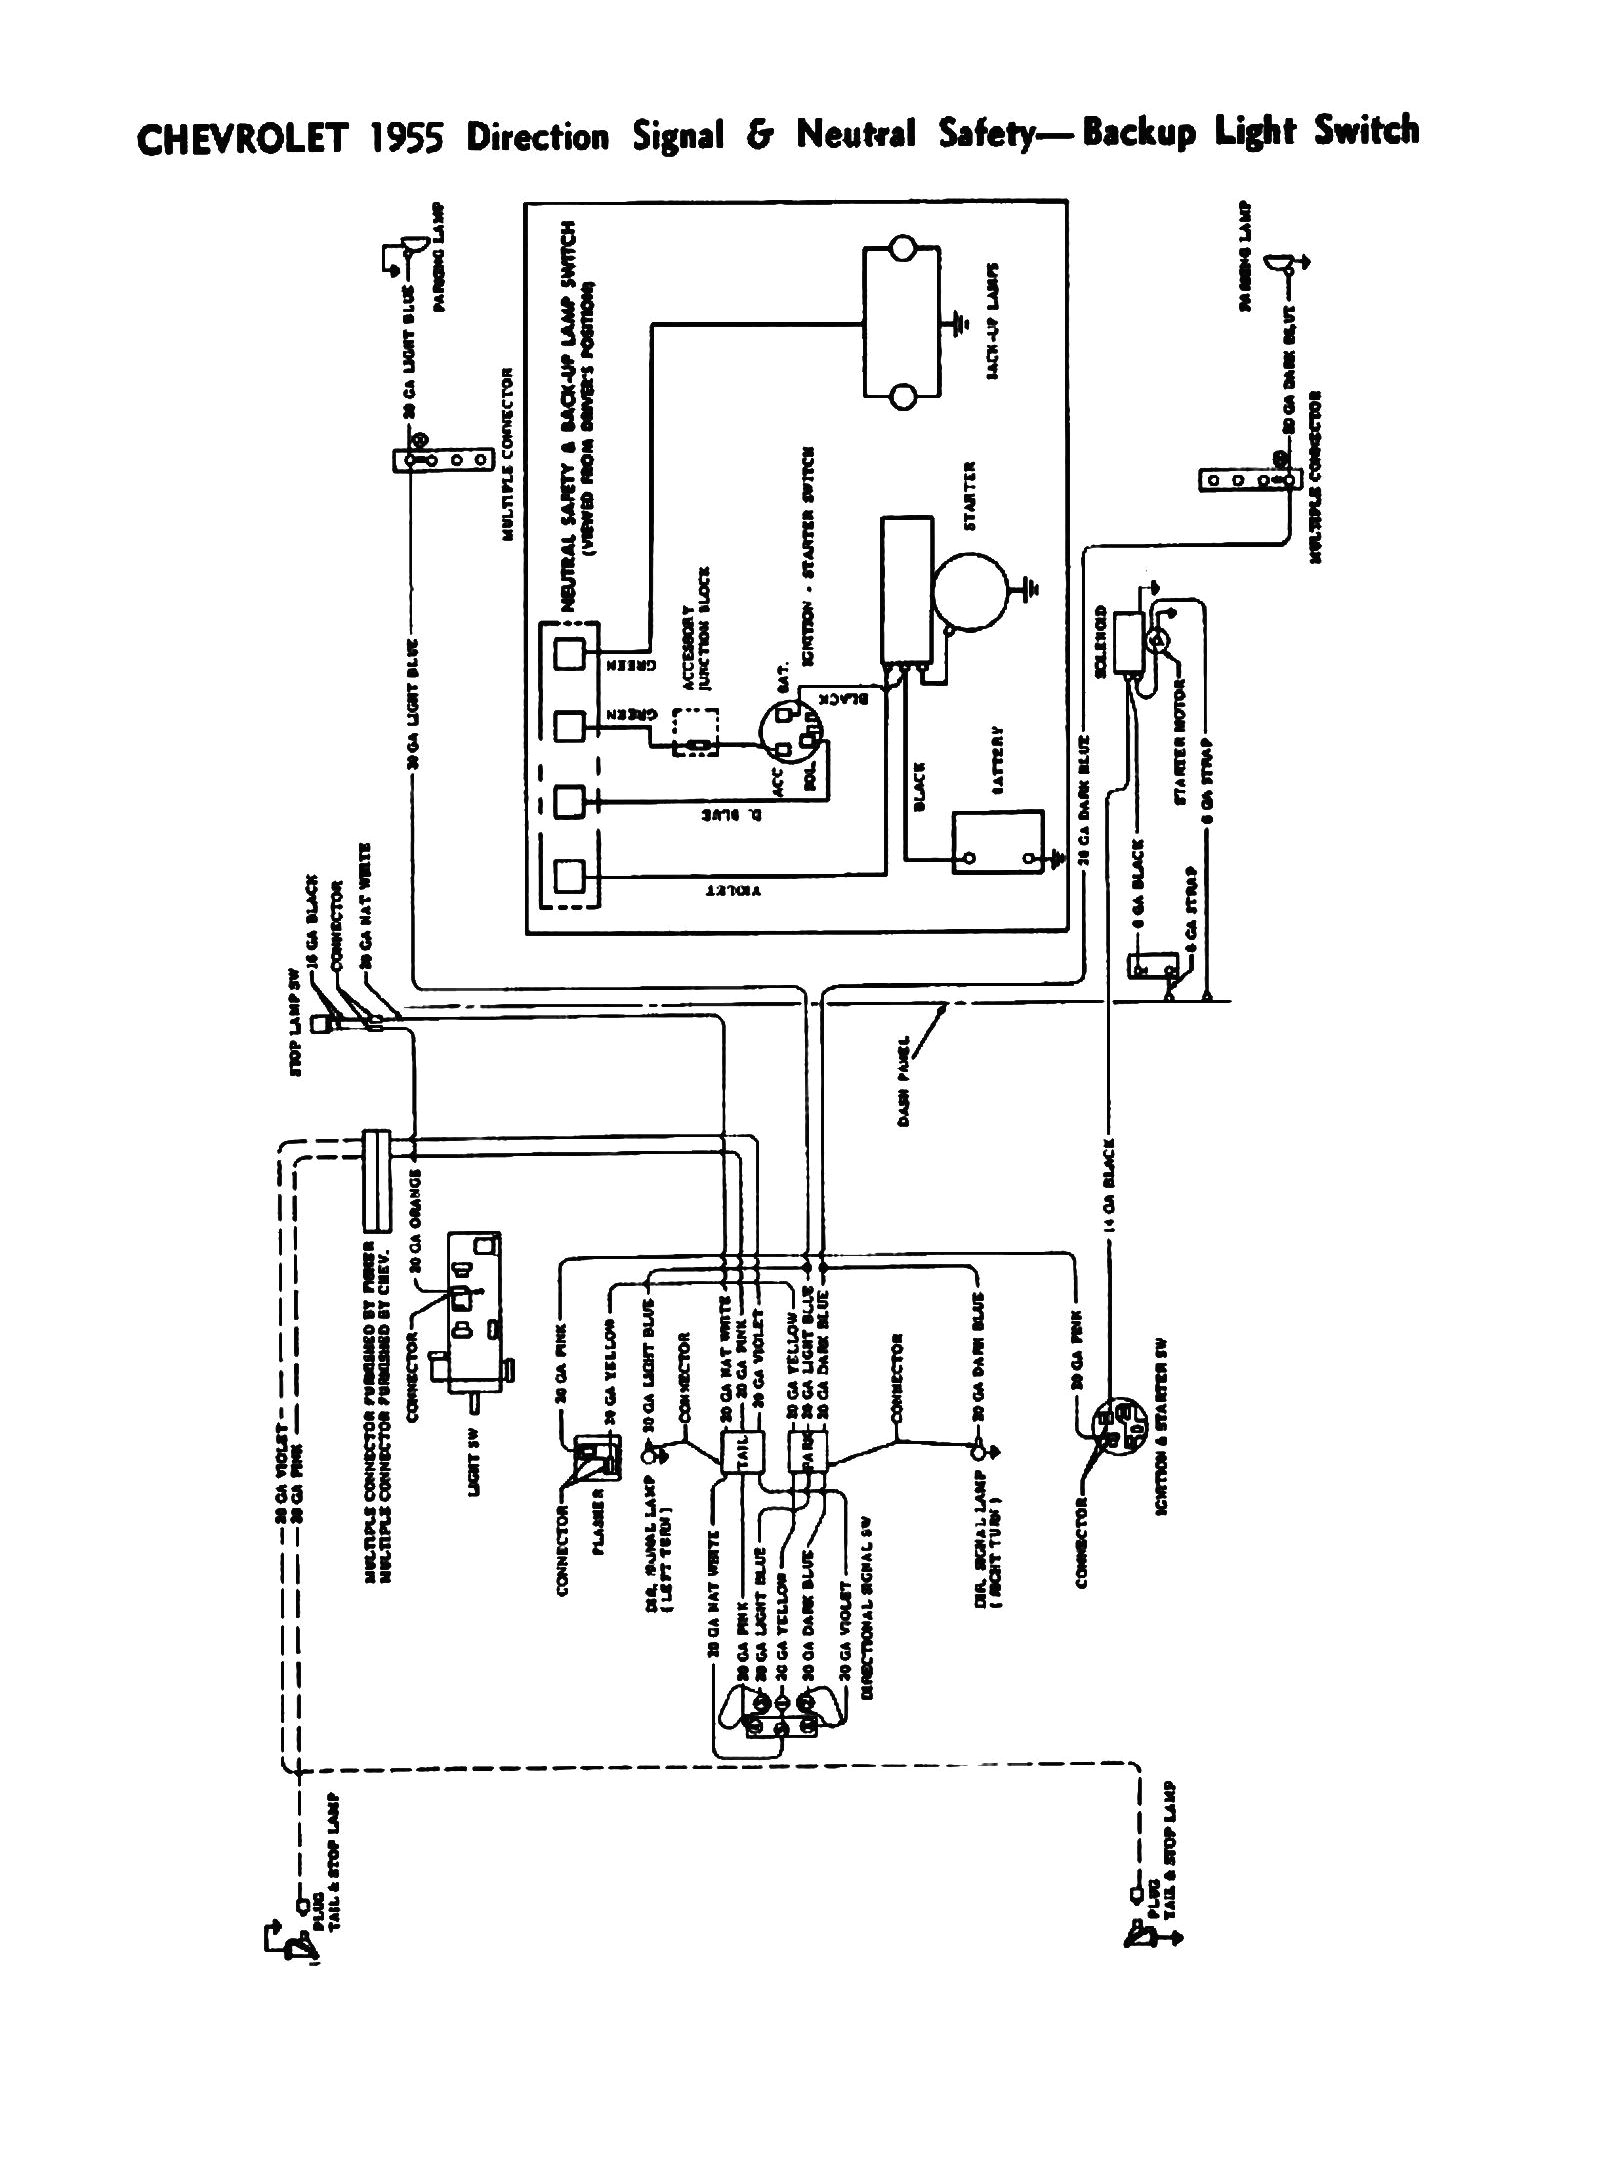 lionel ucs wiring diagram luxury lionel train engine schematics wiring wiring diagrams instructions jpg